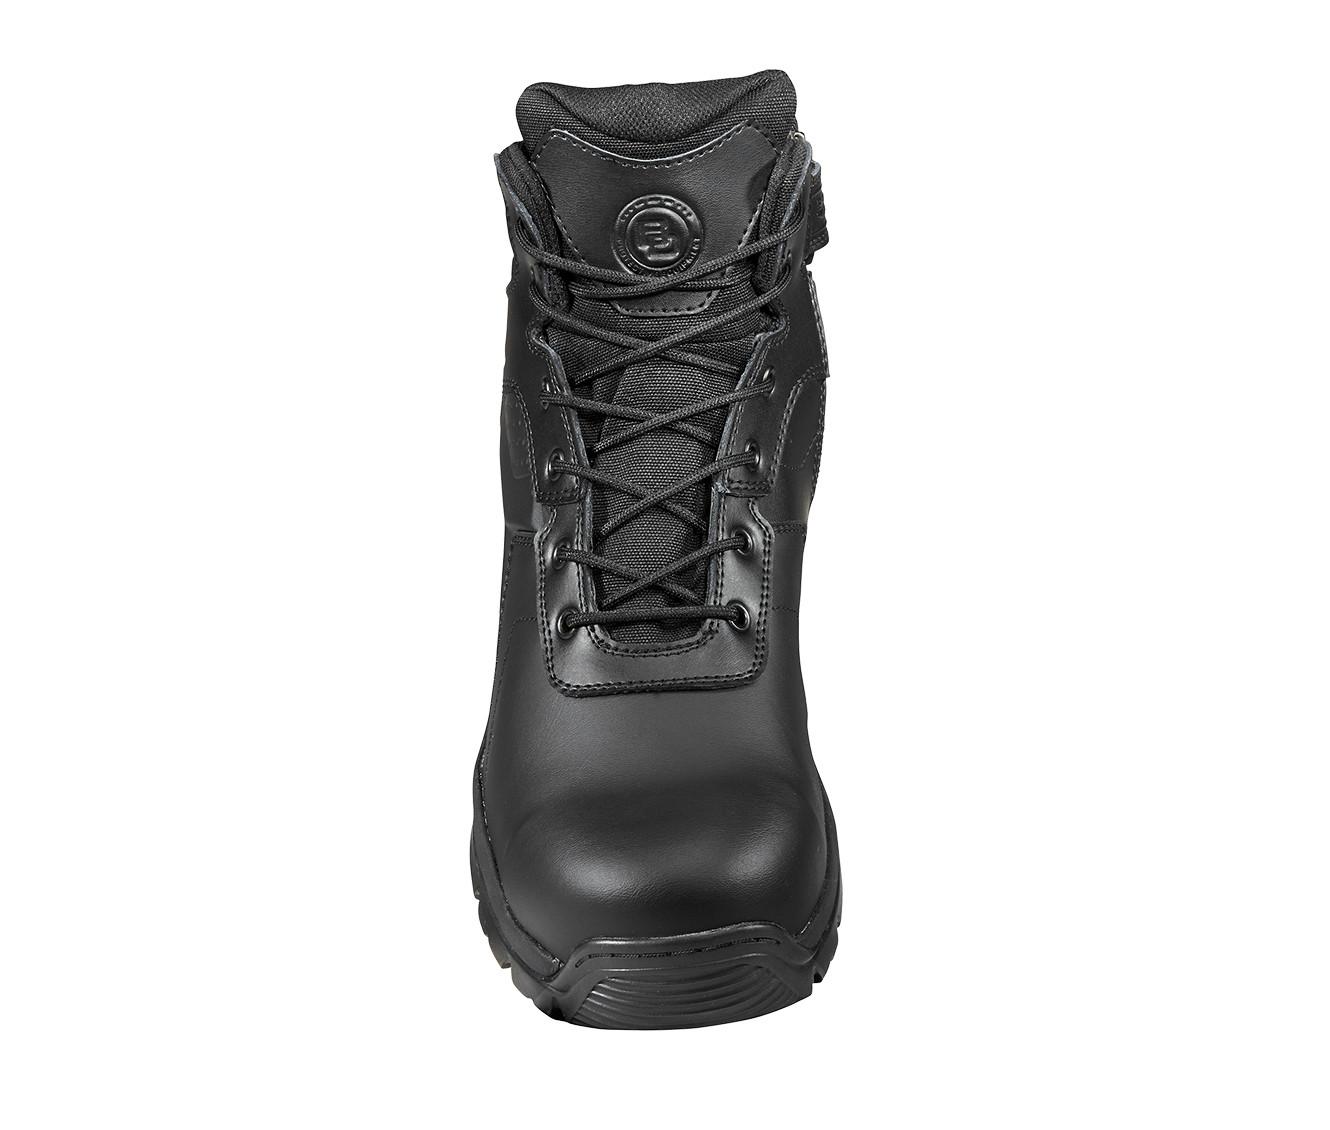 Men's BD Protective Equipment Men's 6" Waterproof Comp Toe Tactical Work Boots